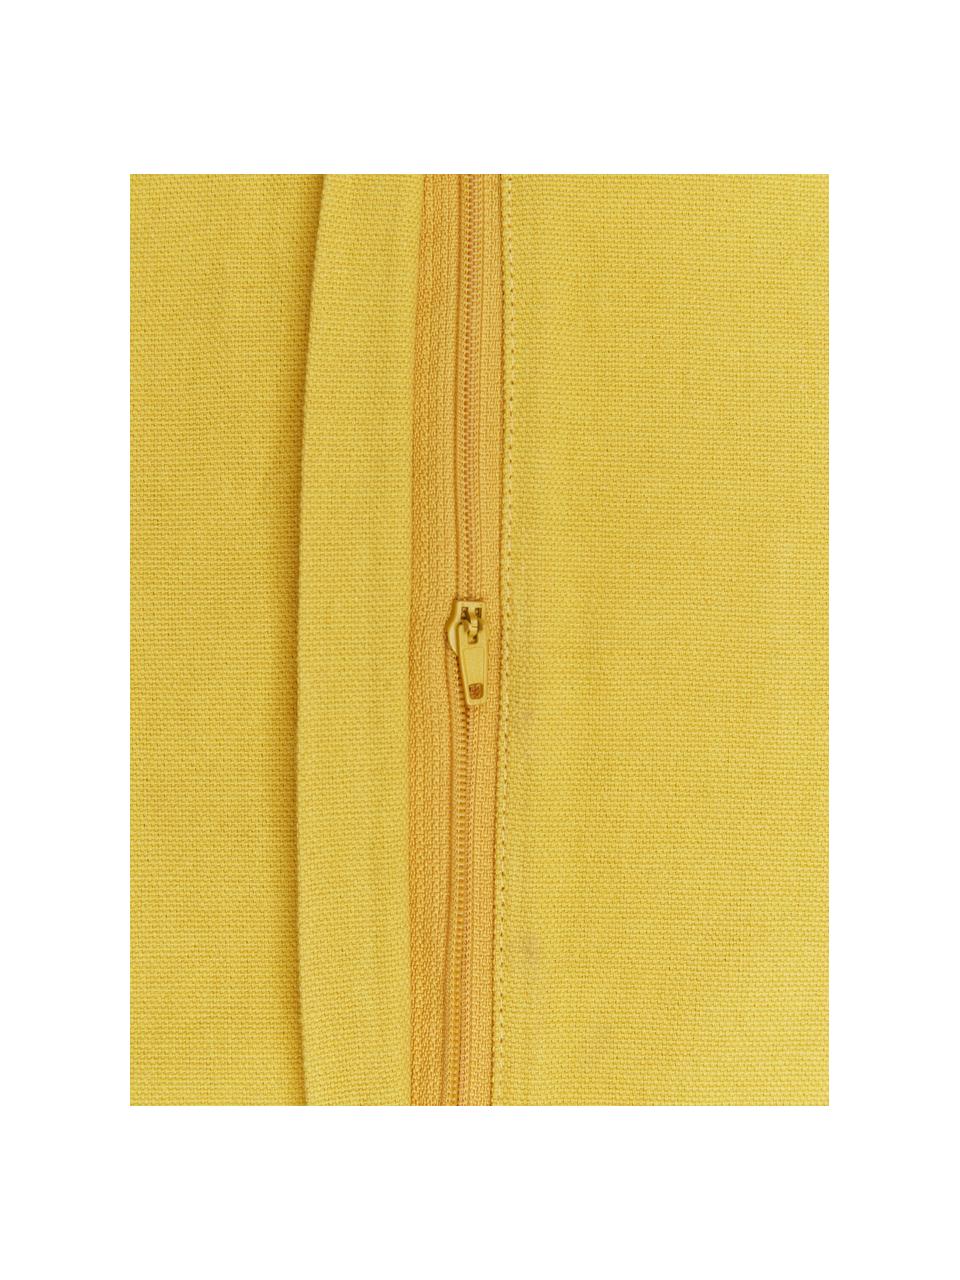 Federa arredo gialla con nappe Shylo, 100% cotone, Giallo, Larg. 40 x Lung. 40 cm